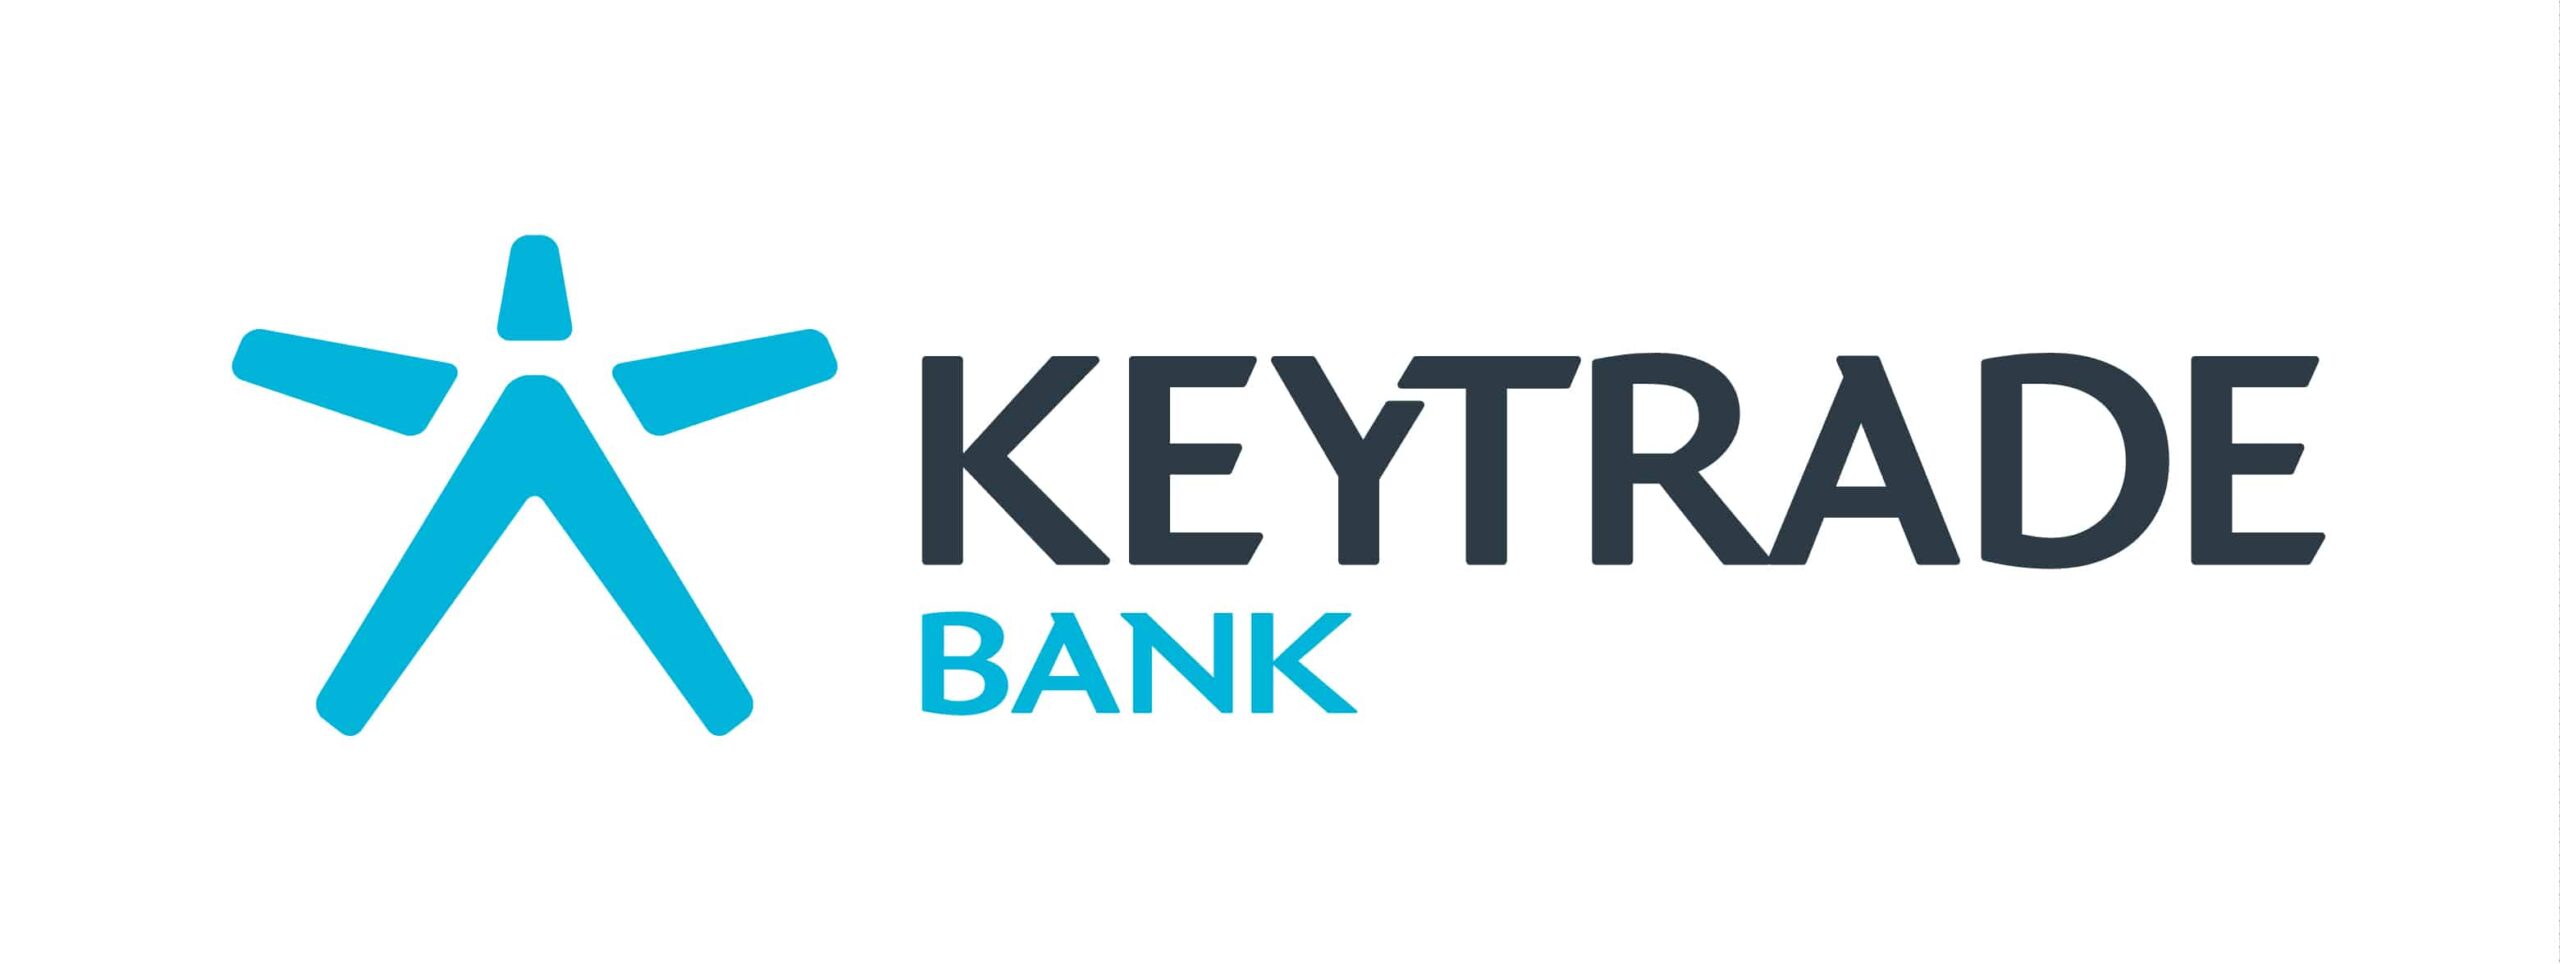 KEYTRADE_logo